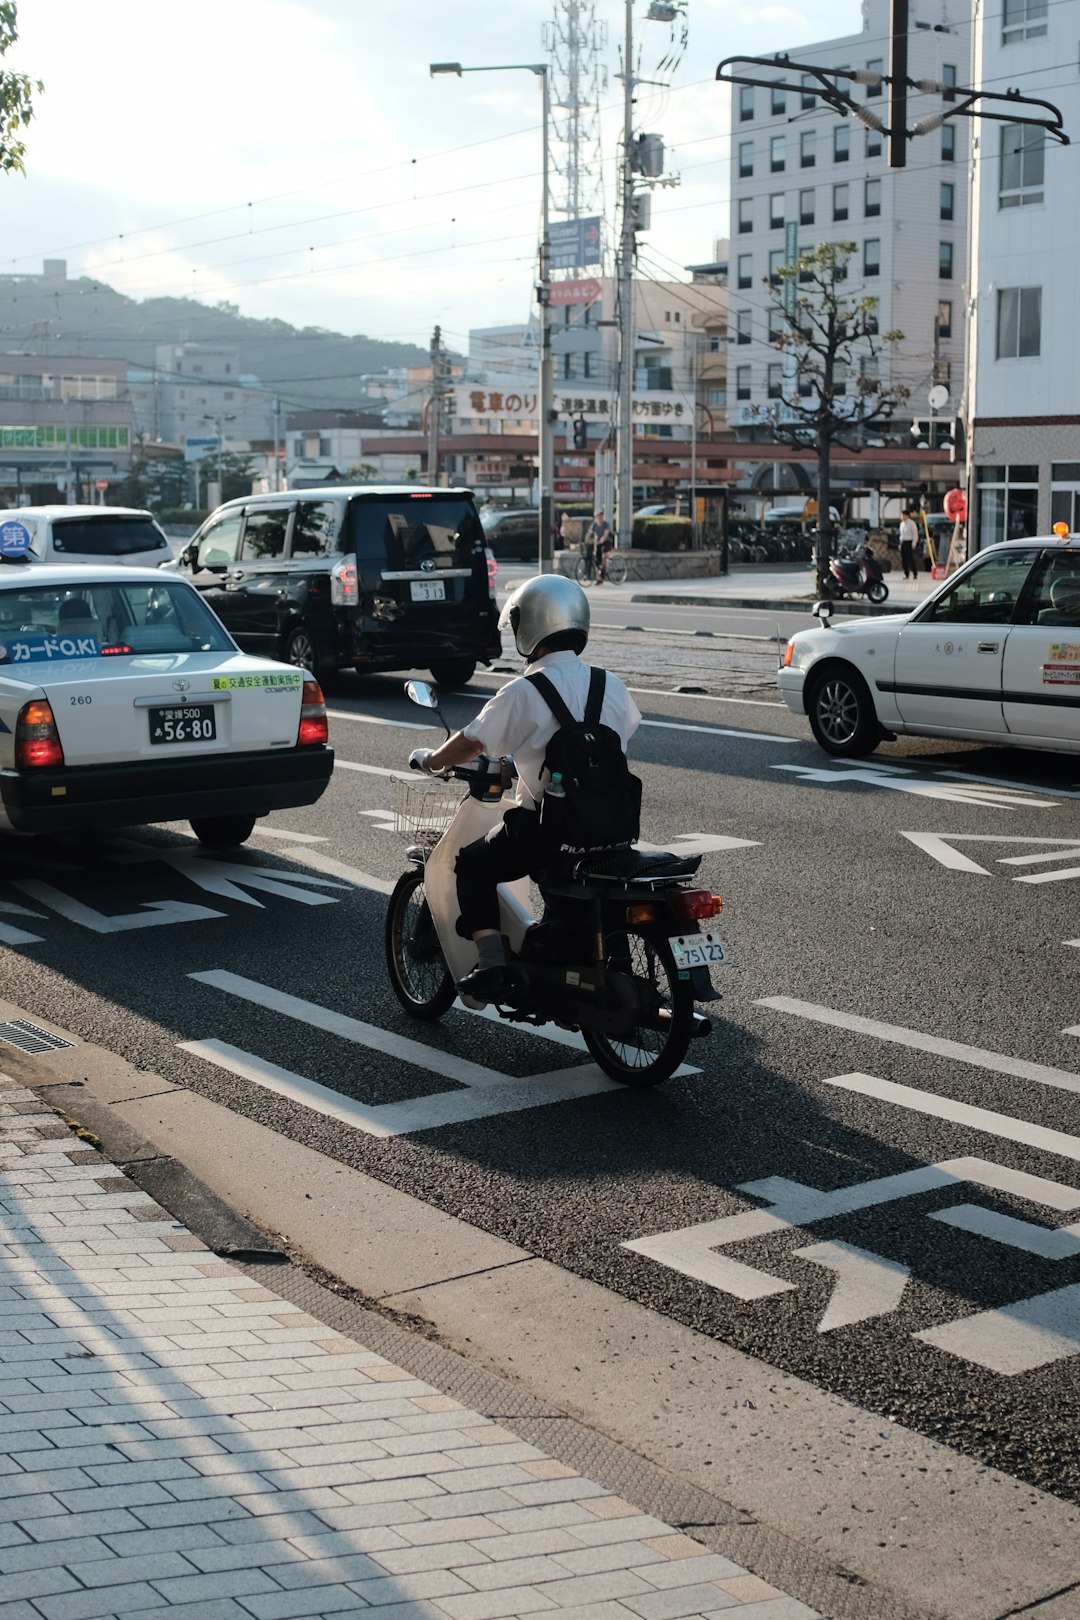 man in white shirt wearing helmet riding motorcycle